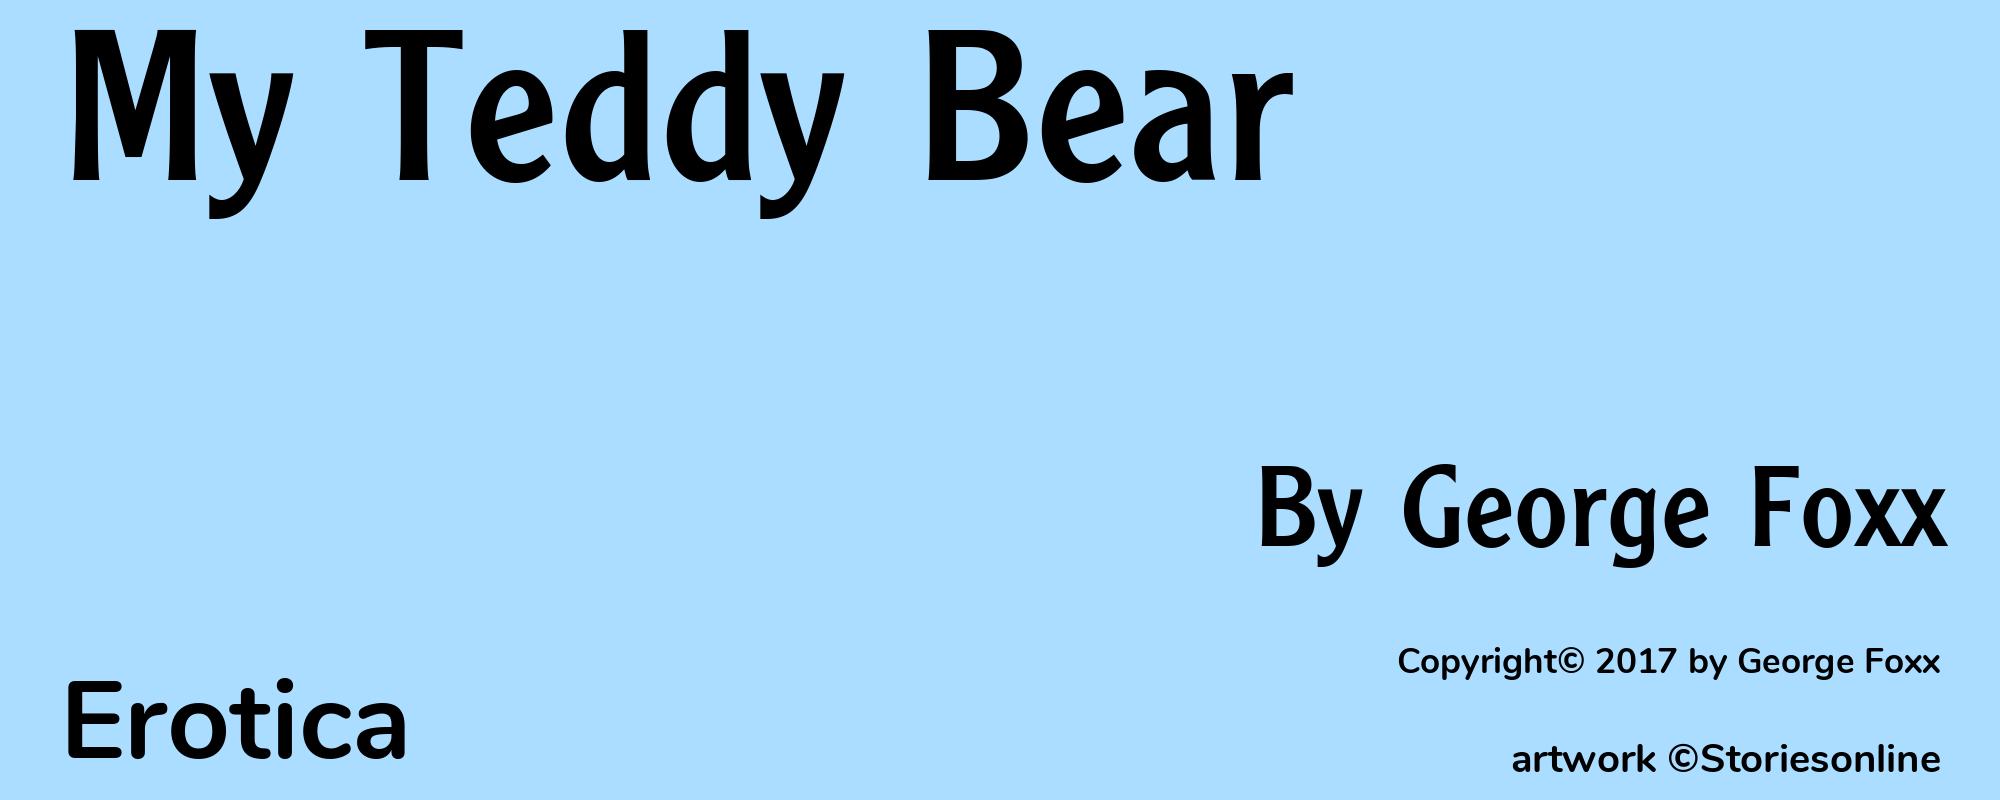 My Teddy Bear - Cover